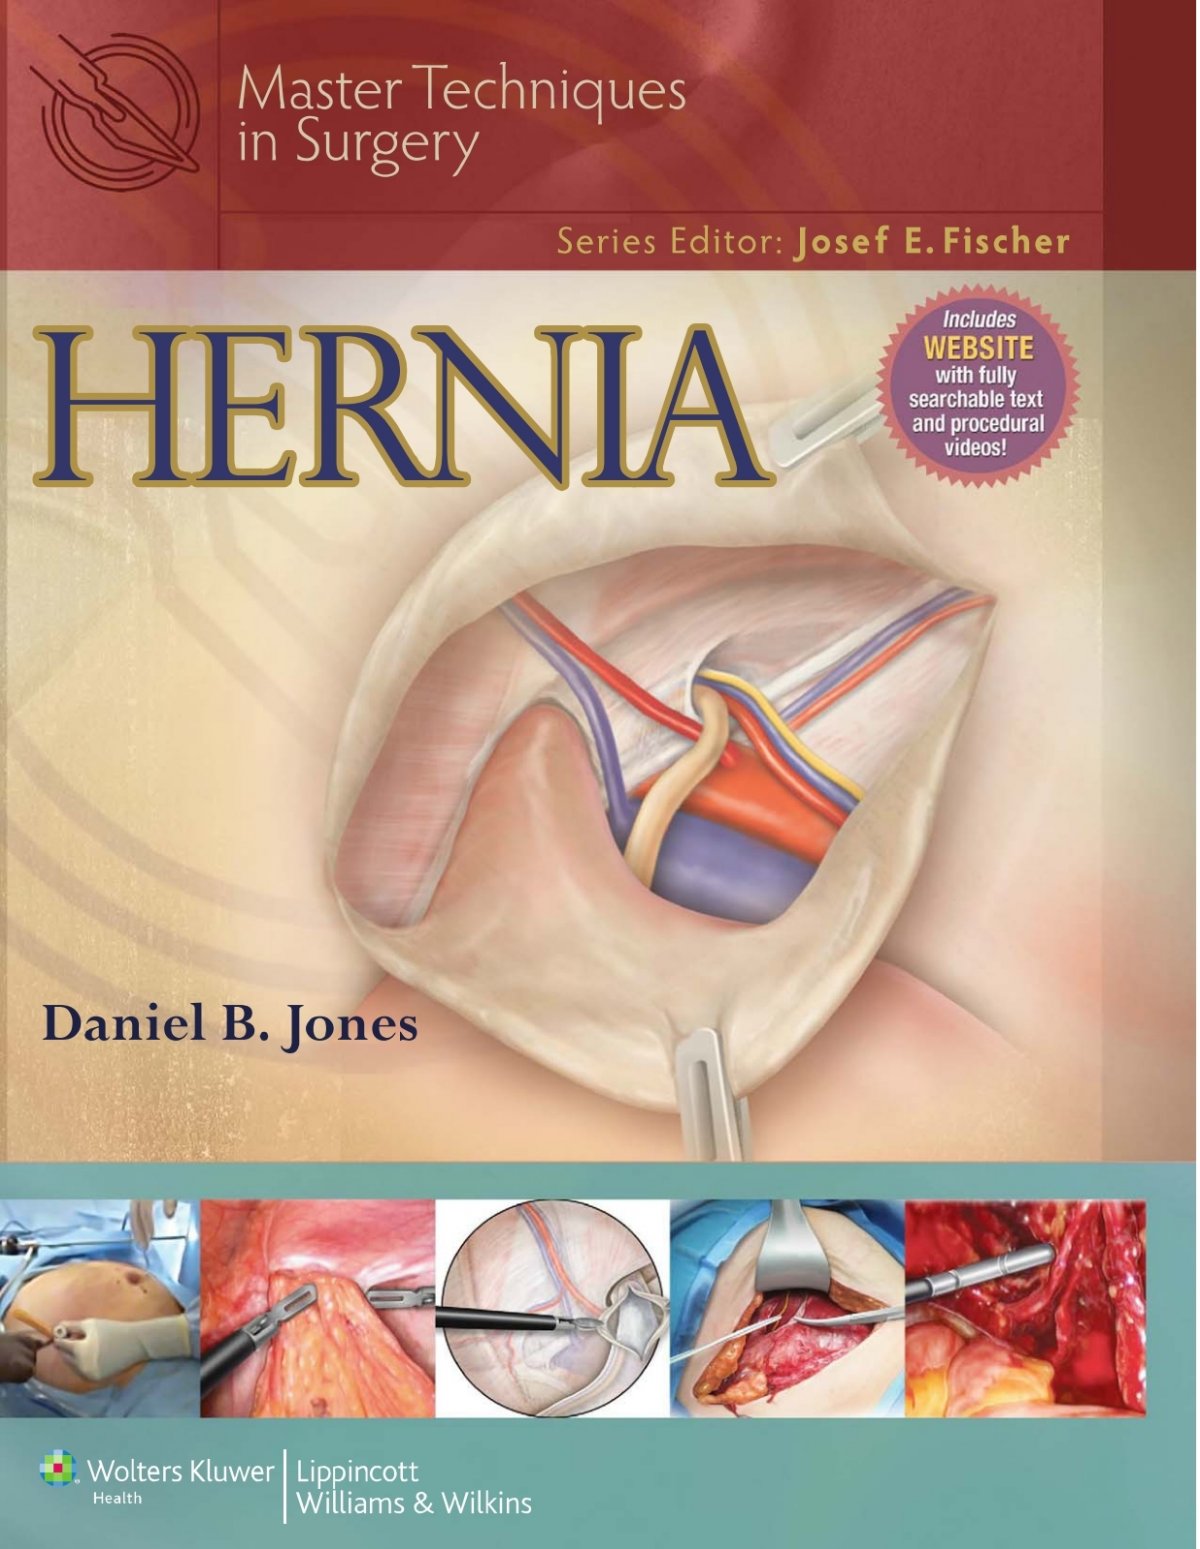 Femoral Hernia Repair, Dallas, TX